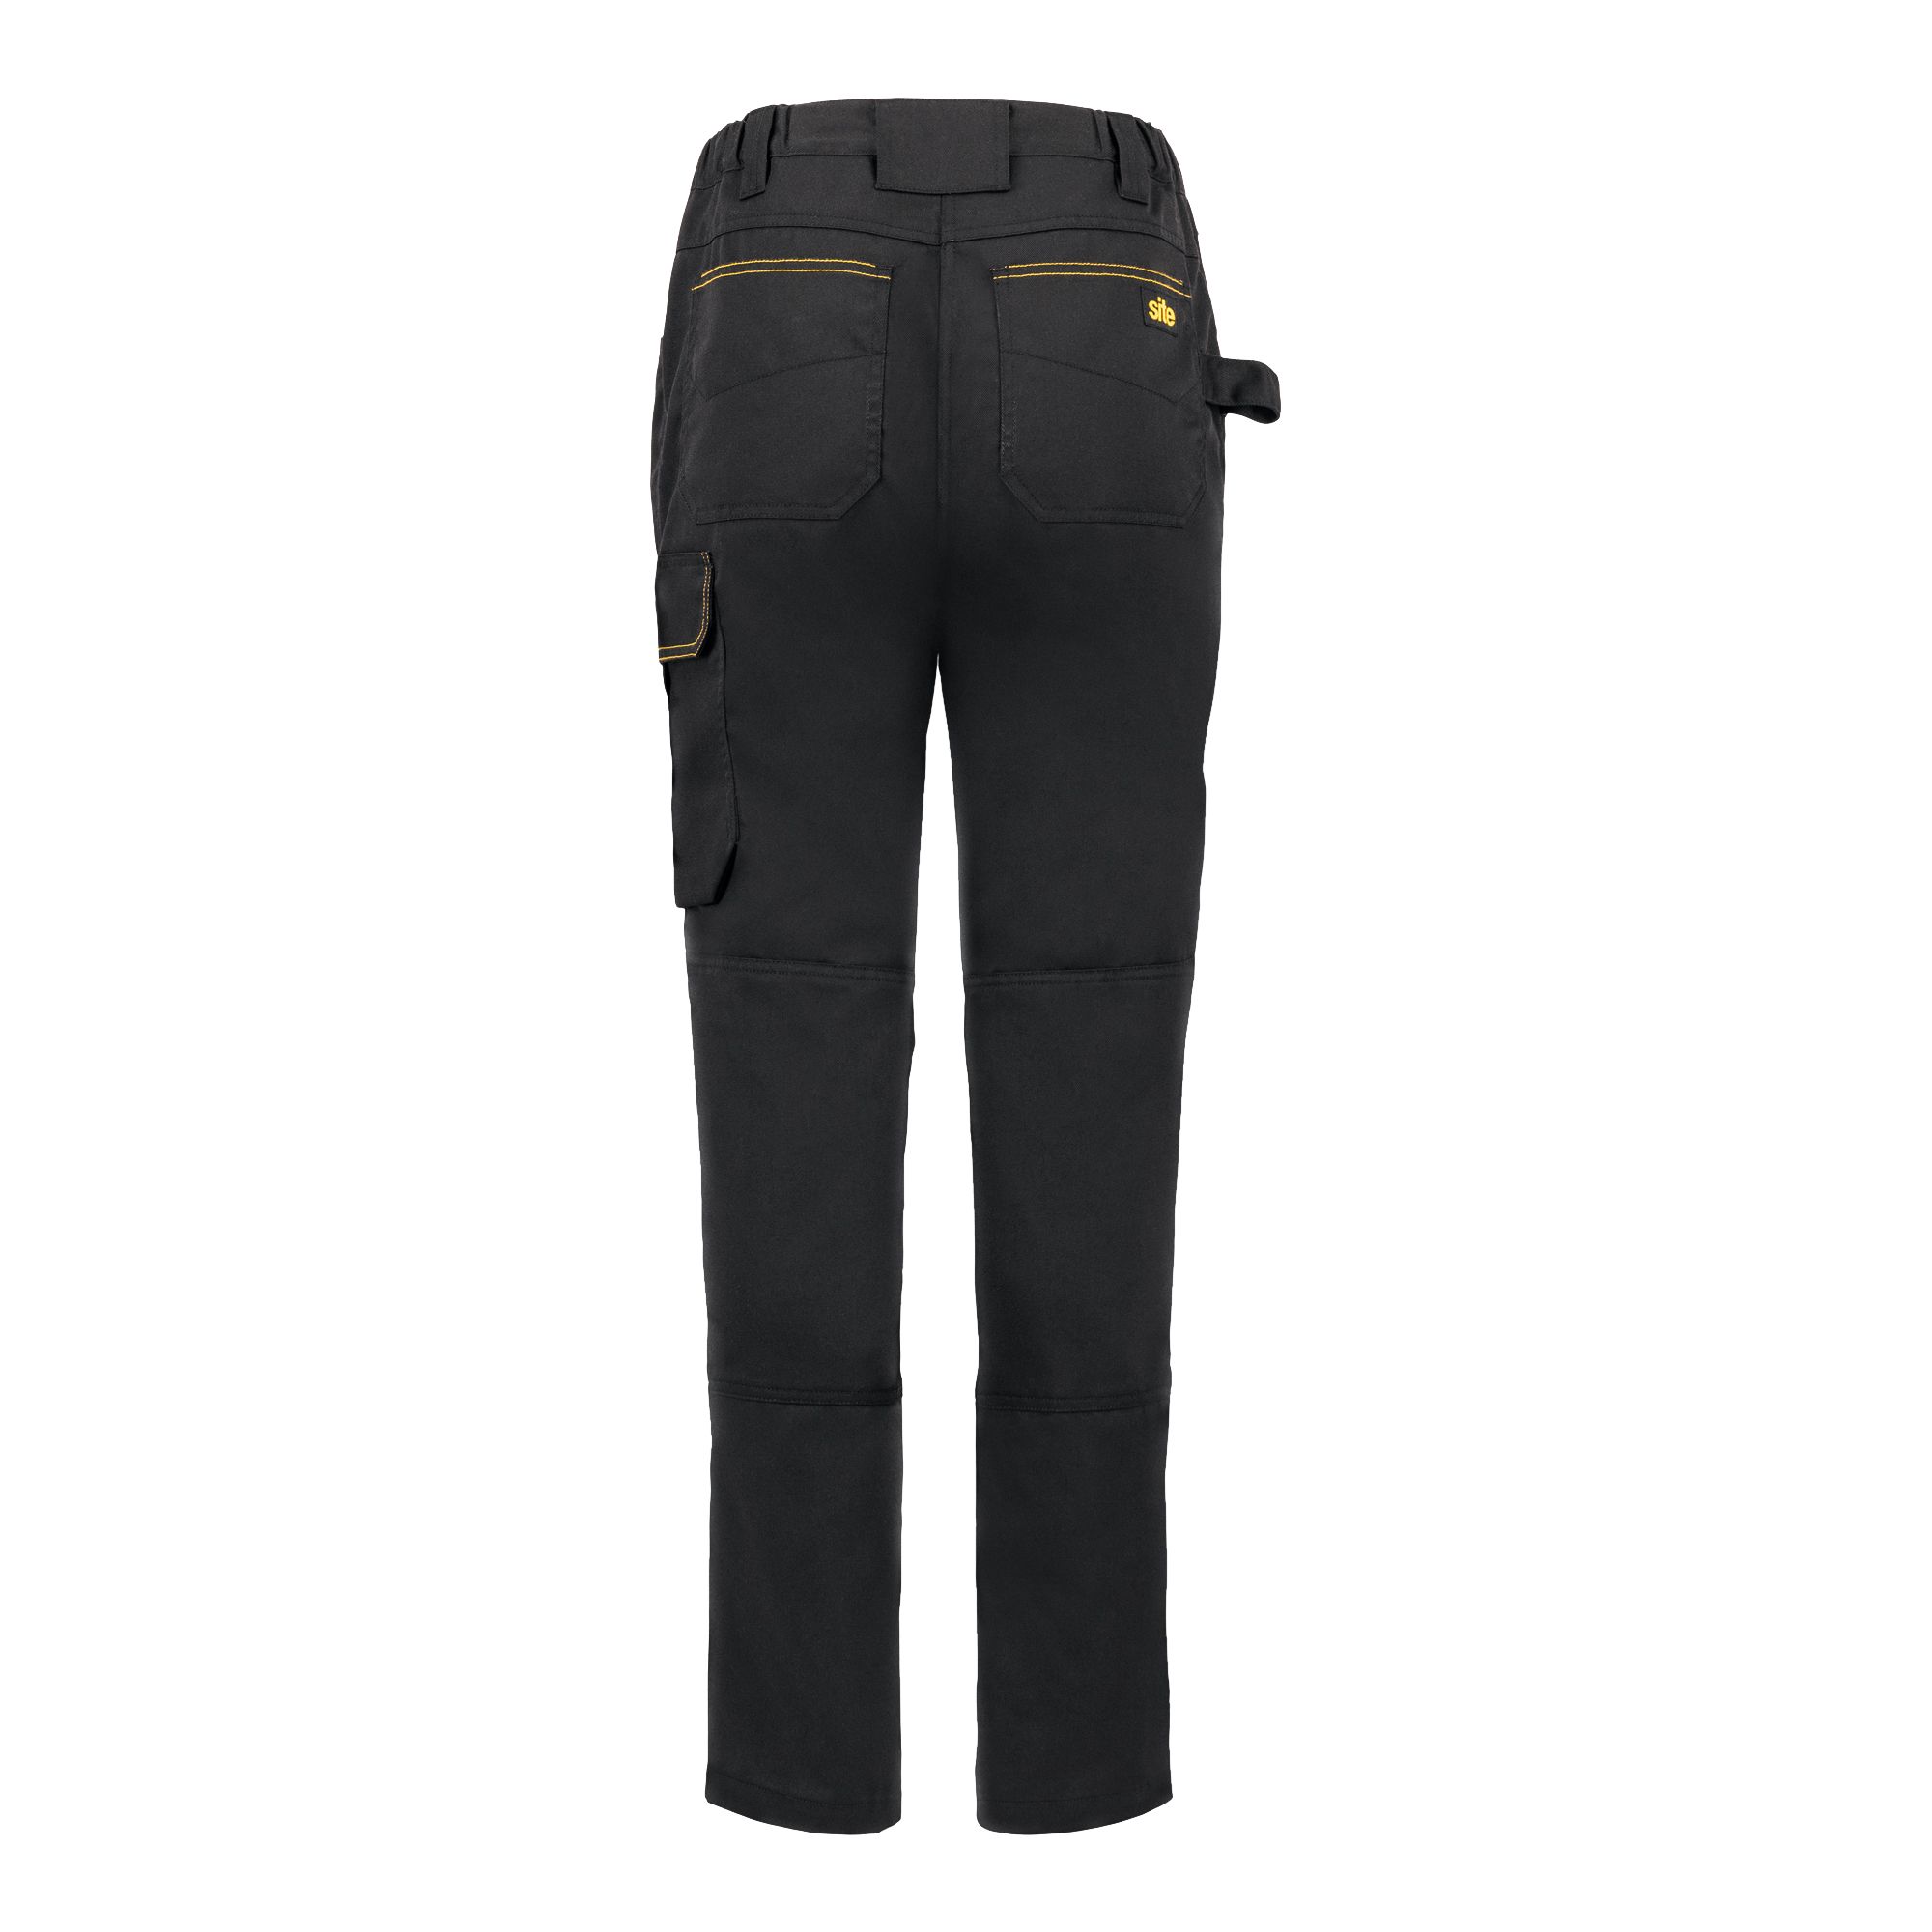 Site Heyward Black Ladies trousers, Size 10 L31"